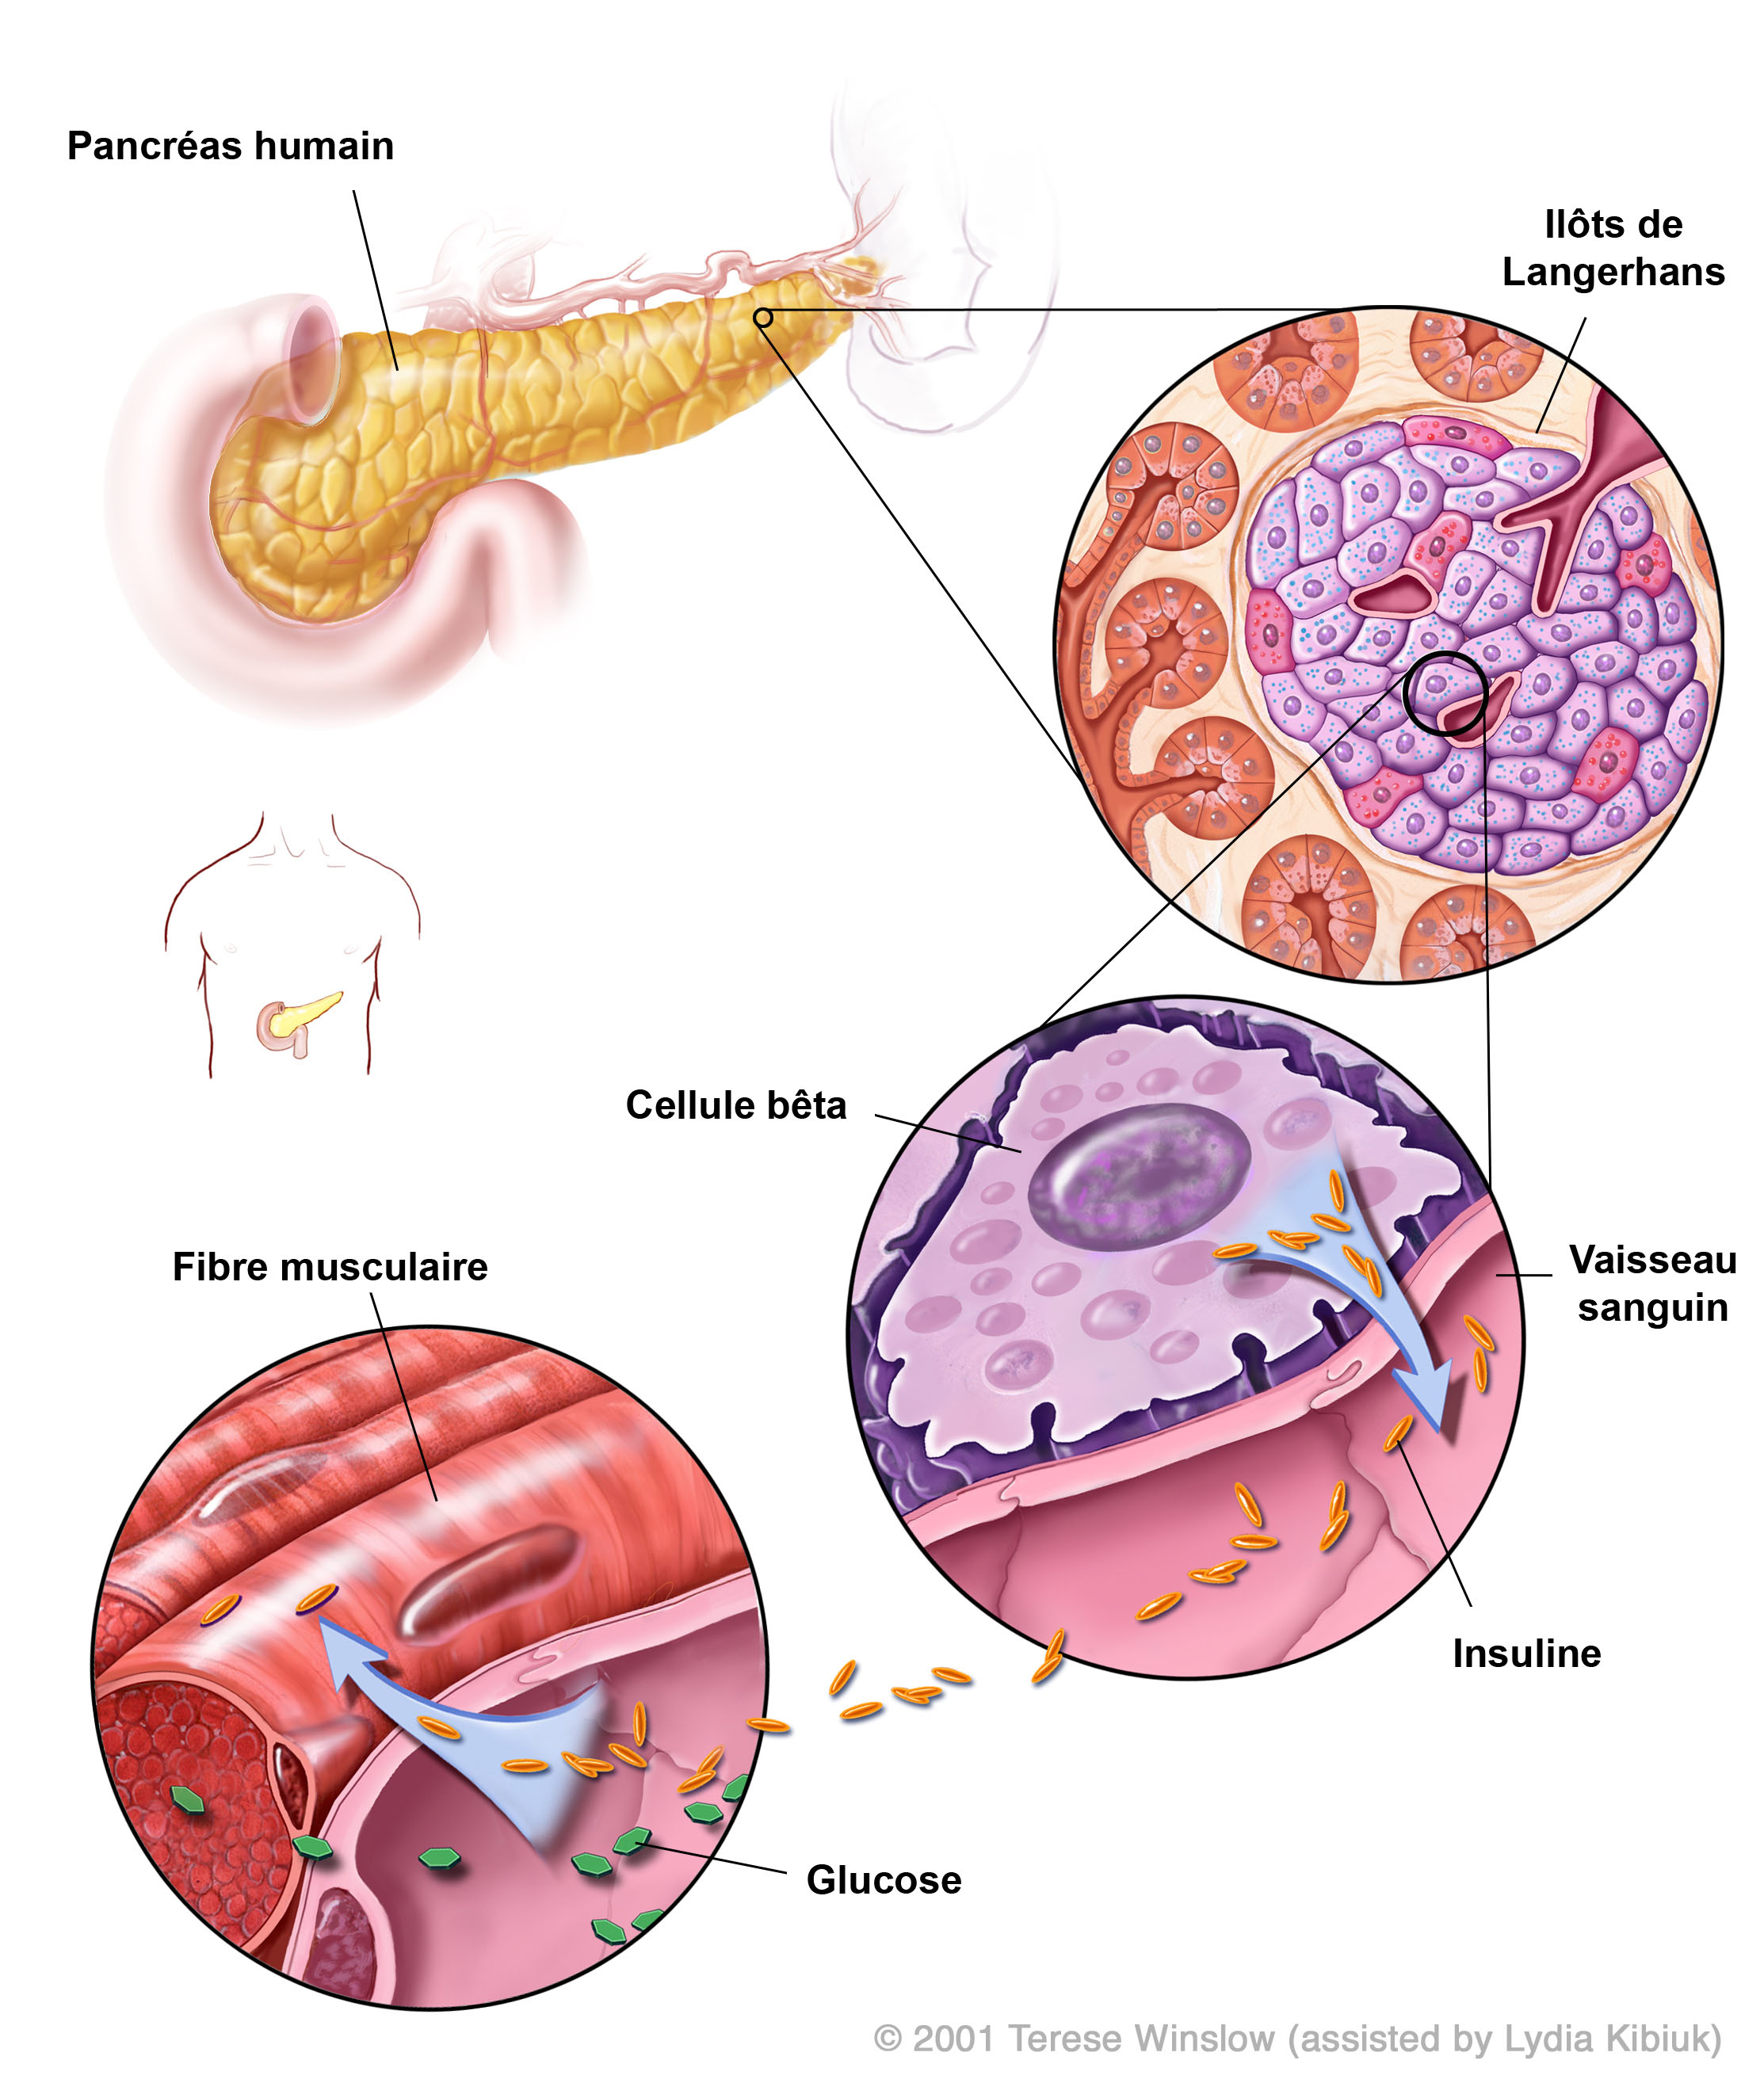 Production de l’insuline dans le pancréas humain